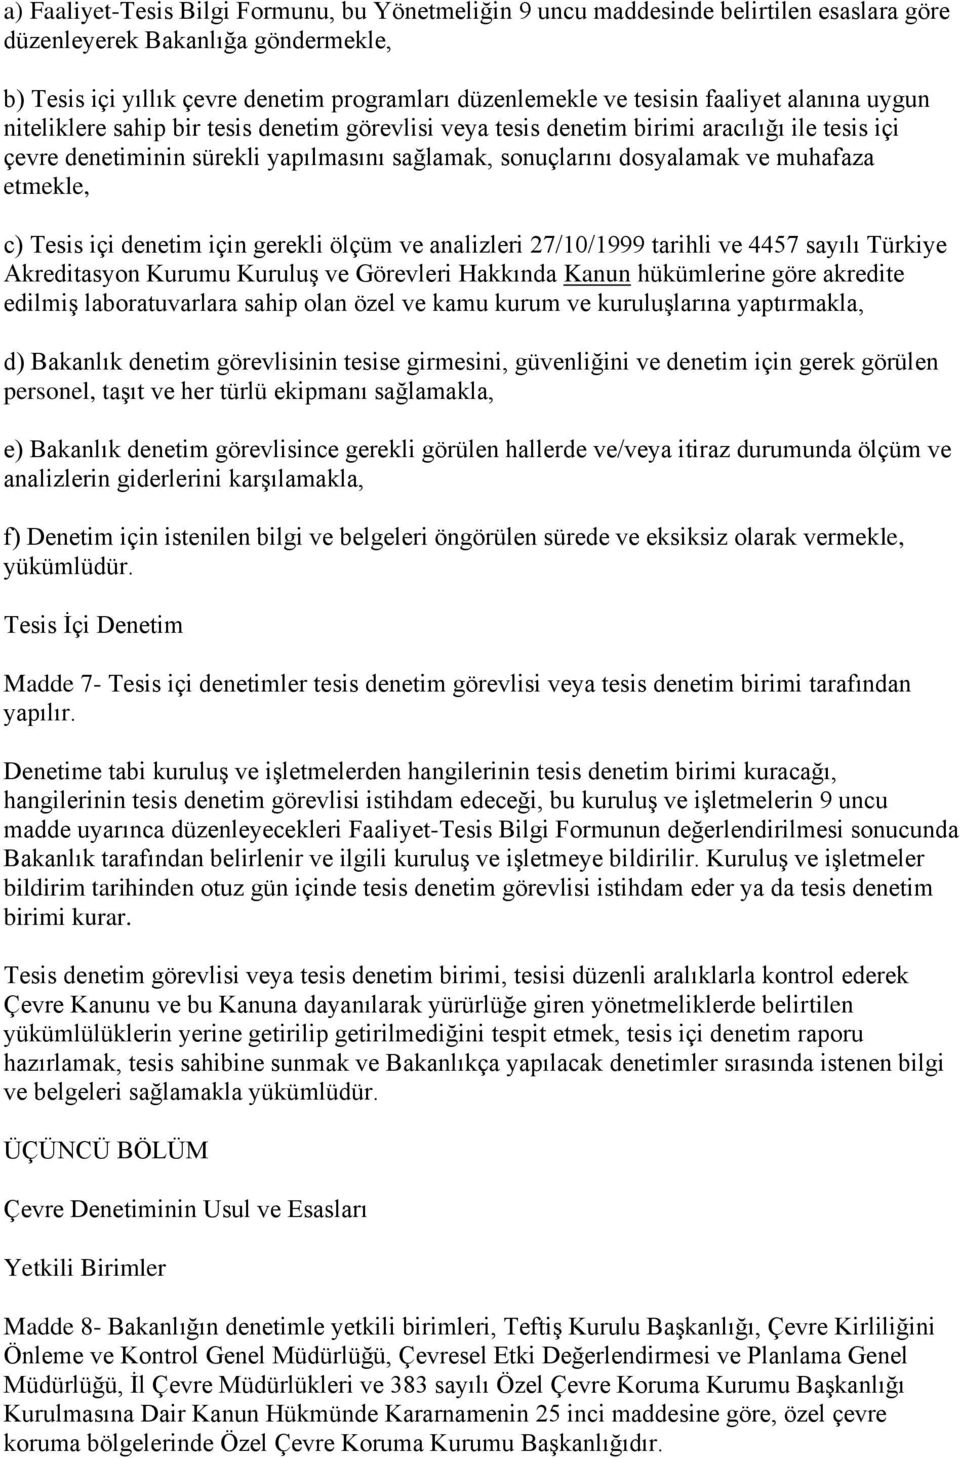 muhafaza etmekle, c) Tesis içi denetim için gerekli ölçüm ve analizleri 27/10/1999 tarihli ve 4457 sayılı Türkiye Akreditasyon Kurumu Kuruluş ve Görevleri Hakkında Kanun hükümlerine göre akredite